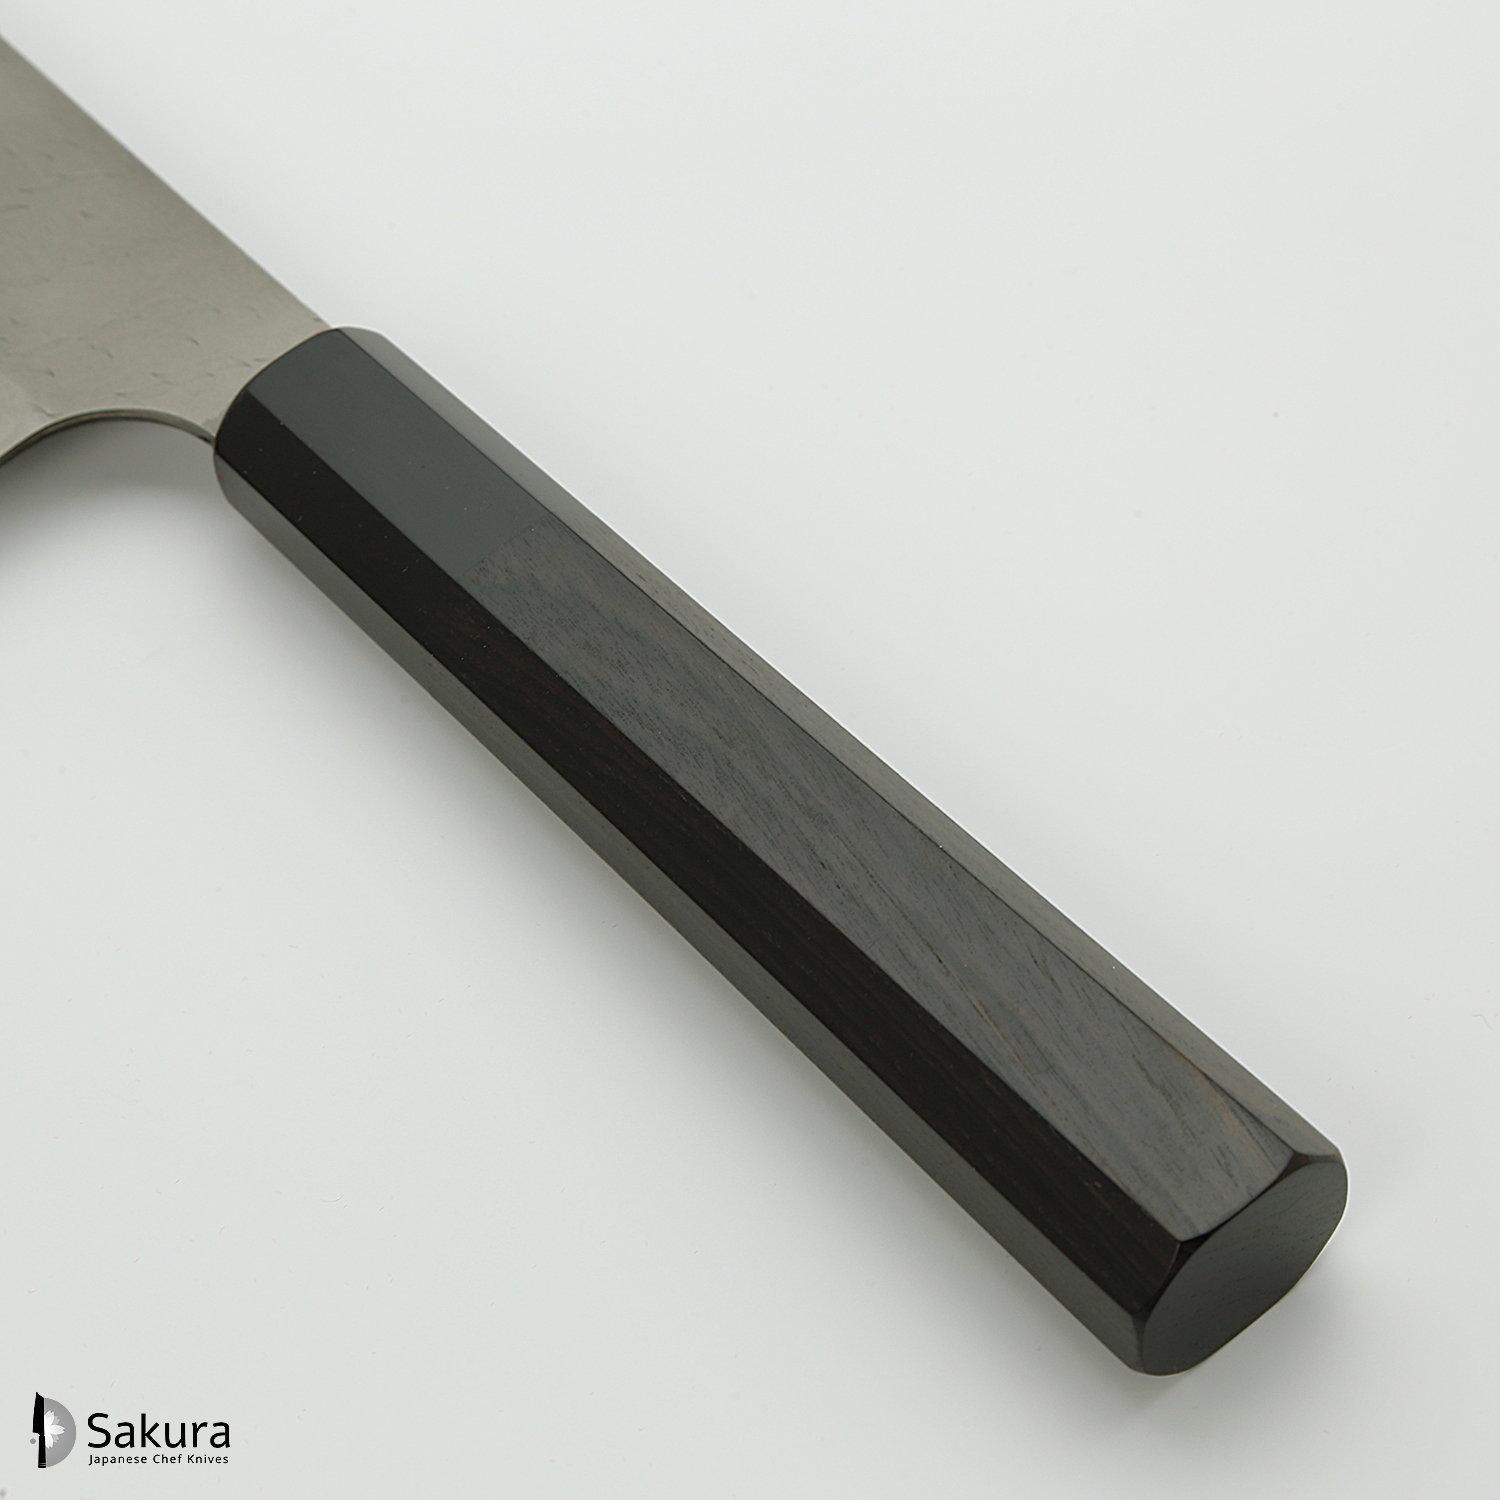 סכין רב-תכליתית סָנטוֹקוּ 165מ״מ מחושלת בעבודת יד 3 שכבות: פלדת פחמן יפנית מתקדמת מסוג Aogami Super עטופה פלדת אל-חלד גימור מט מלוטש עם ריקוע פטיש ניגארה יפן